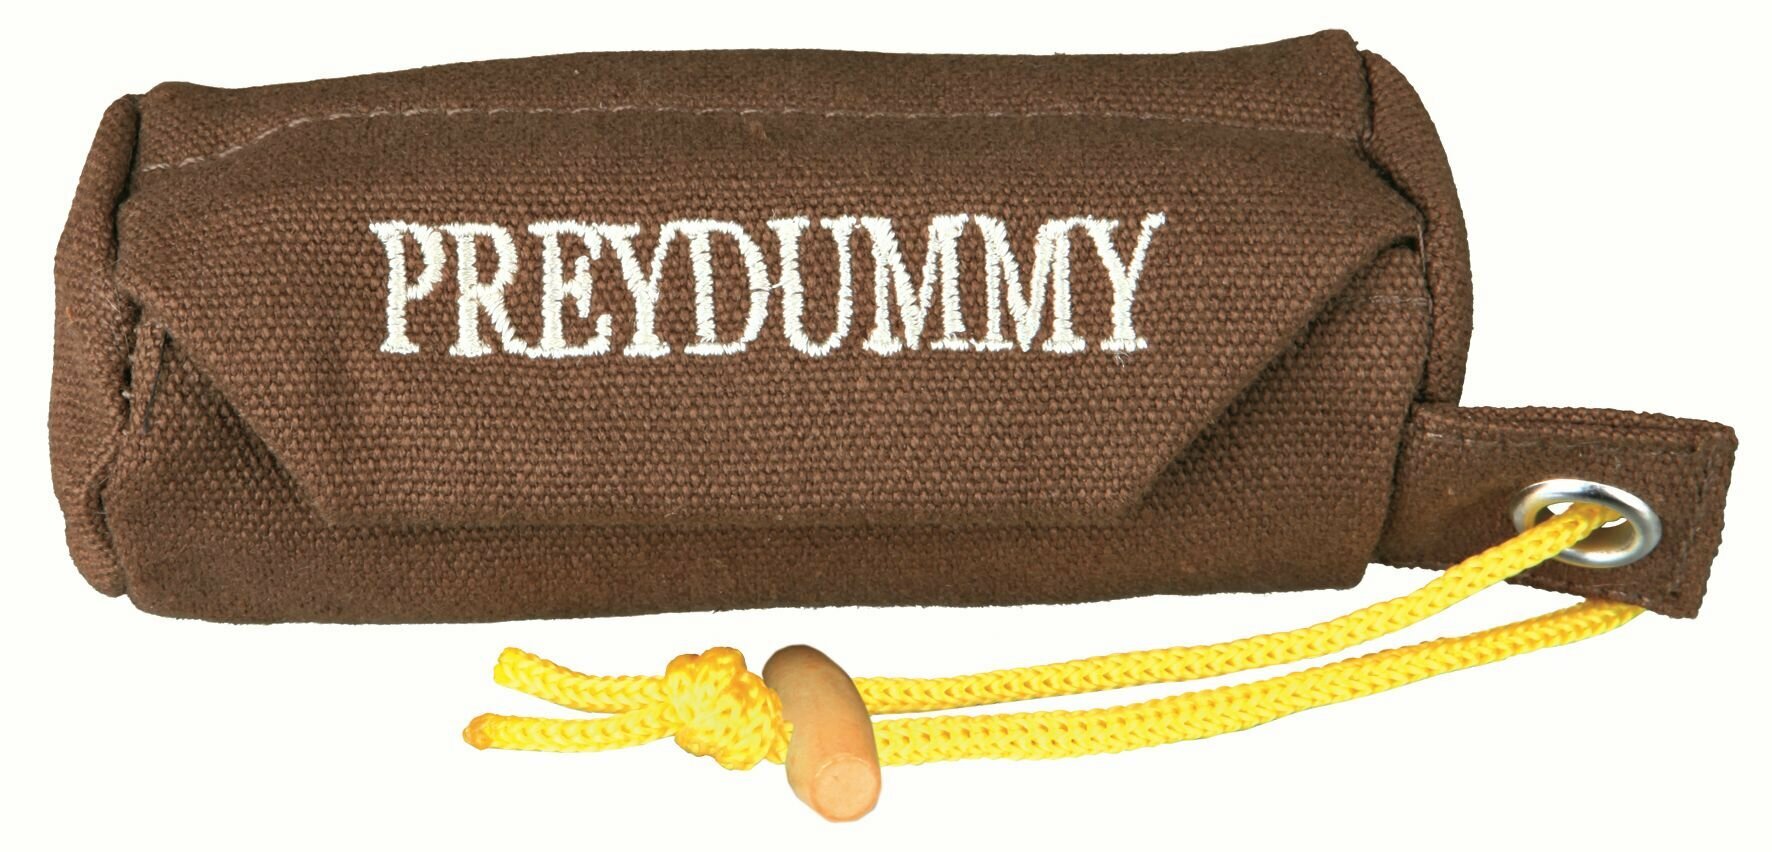 Апорт Preydummy на молнии, Trixie (товары для животных, ф 5 х 12 см, коричневый, 32190)